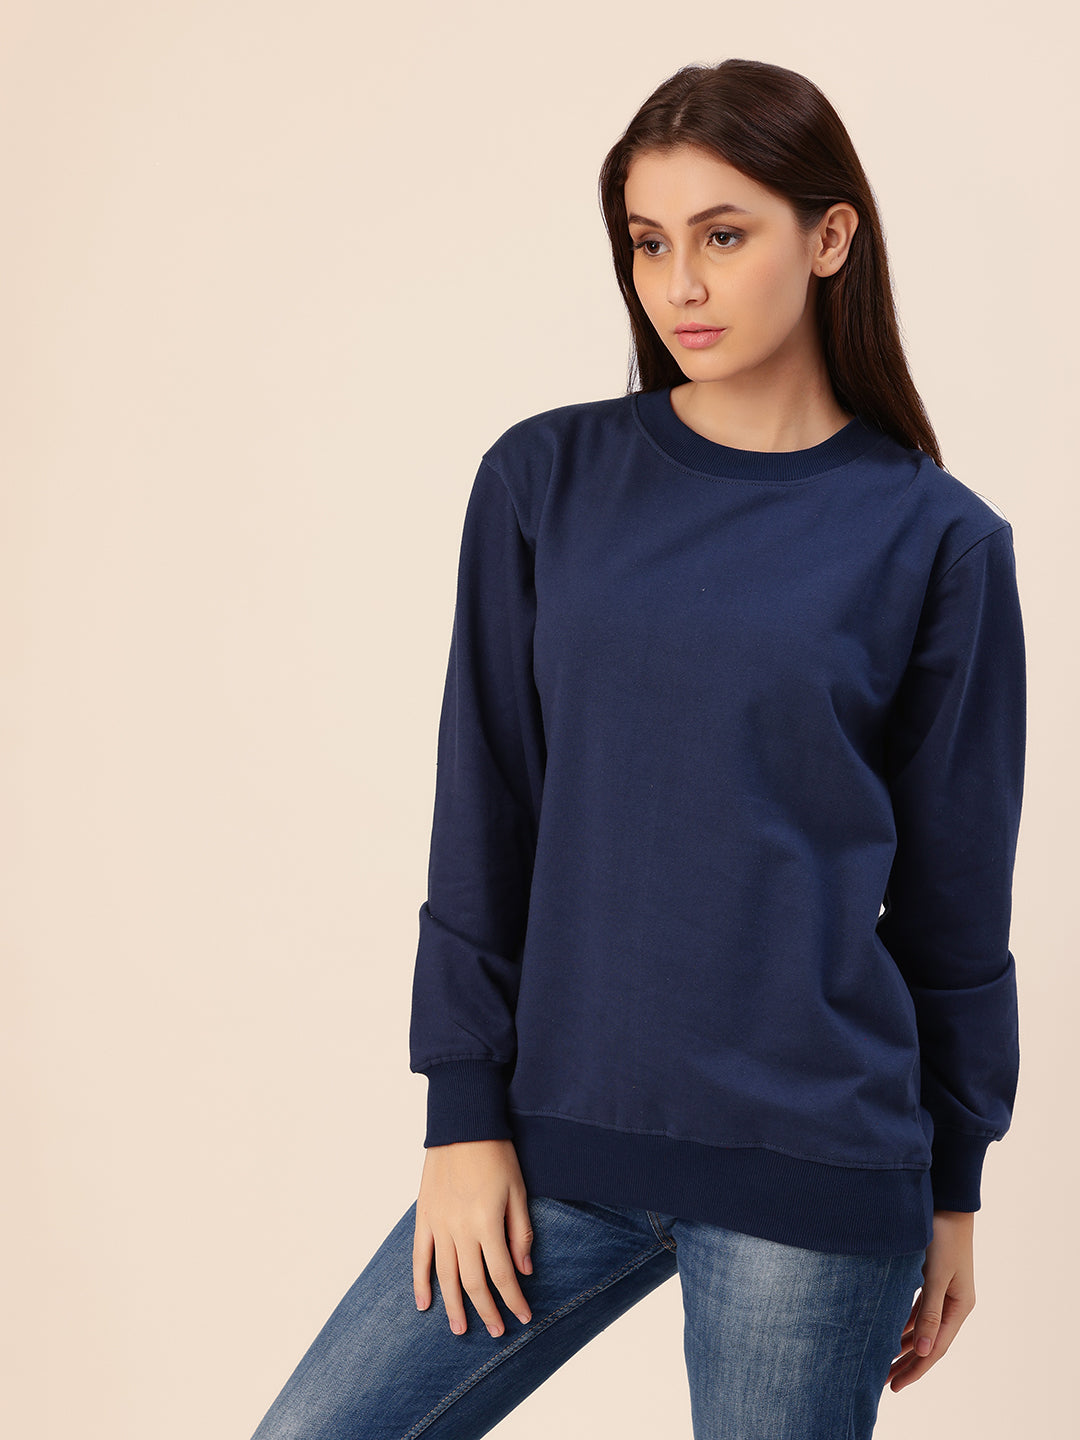 Navy Solid Cotton Fleece Sweatshirt